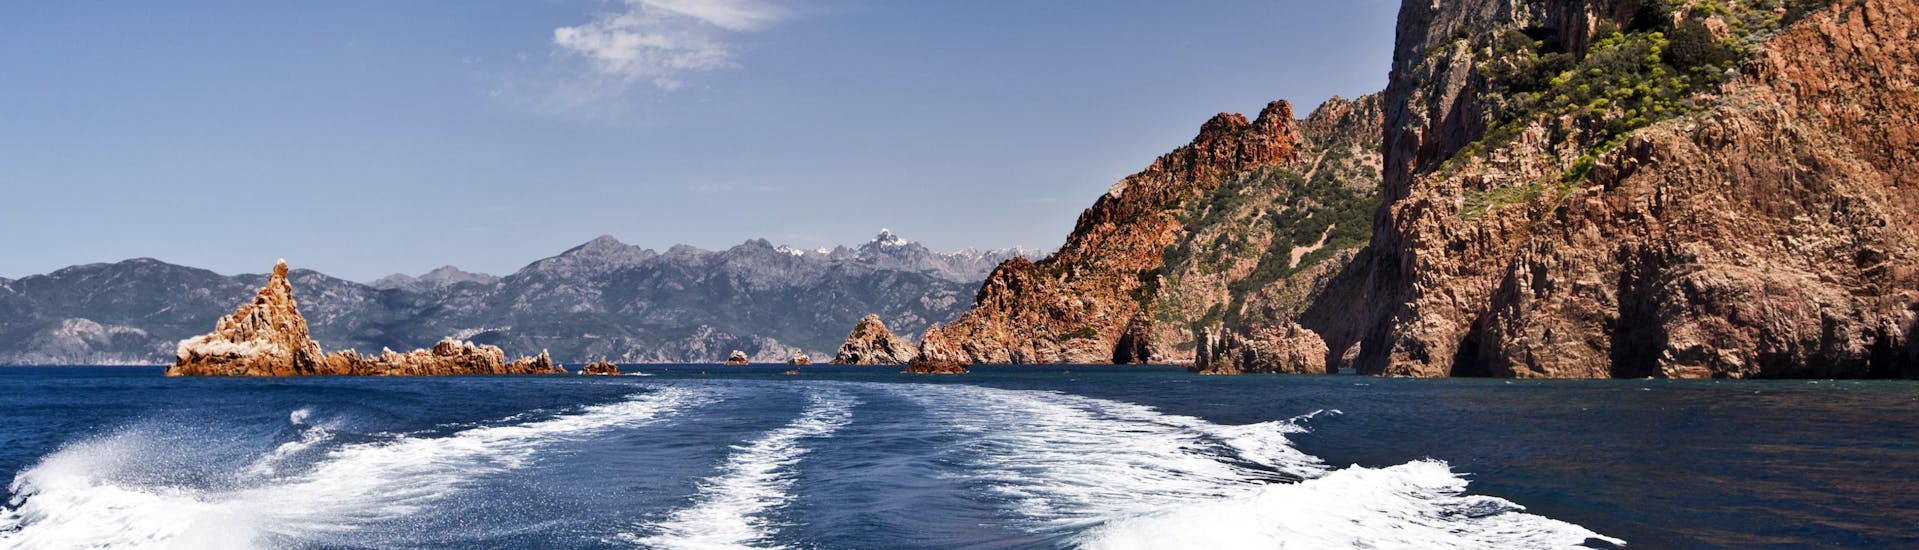 Vista dal retro di un'imbarcazione durante una gita in barca nelle suggestive Calanques de Piana, sulla costa occidentale della Corsica.